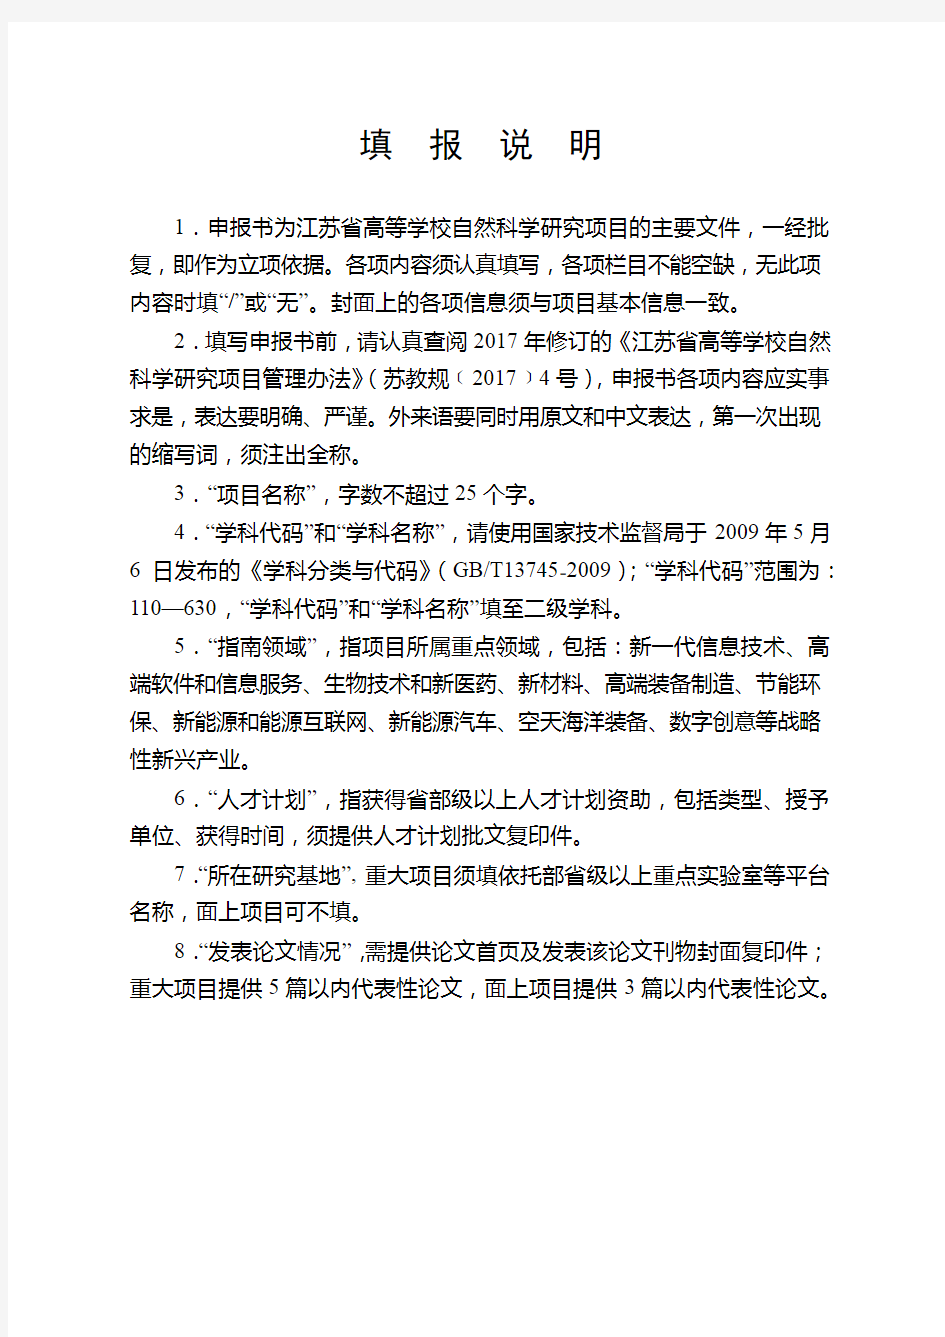 江苏省高等学校自然科学研究面上项目申报书(2020年度)